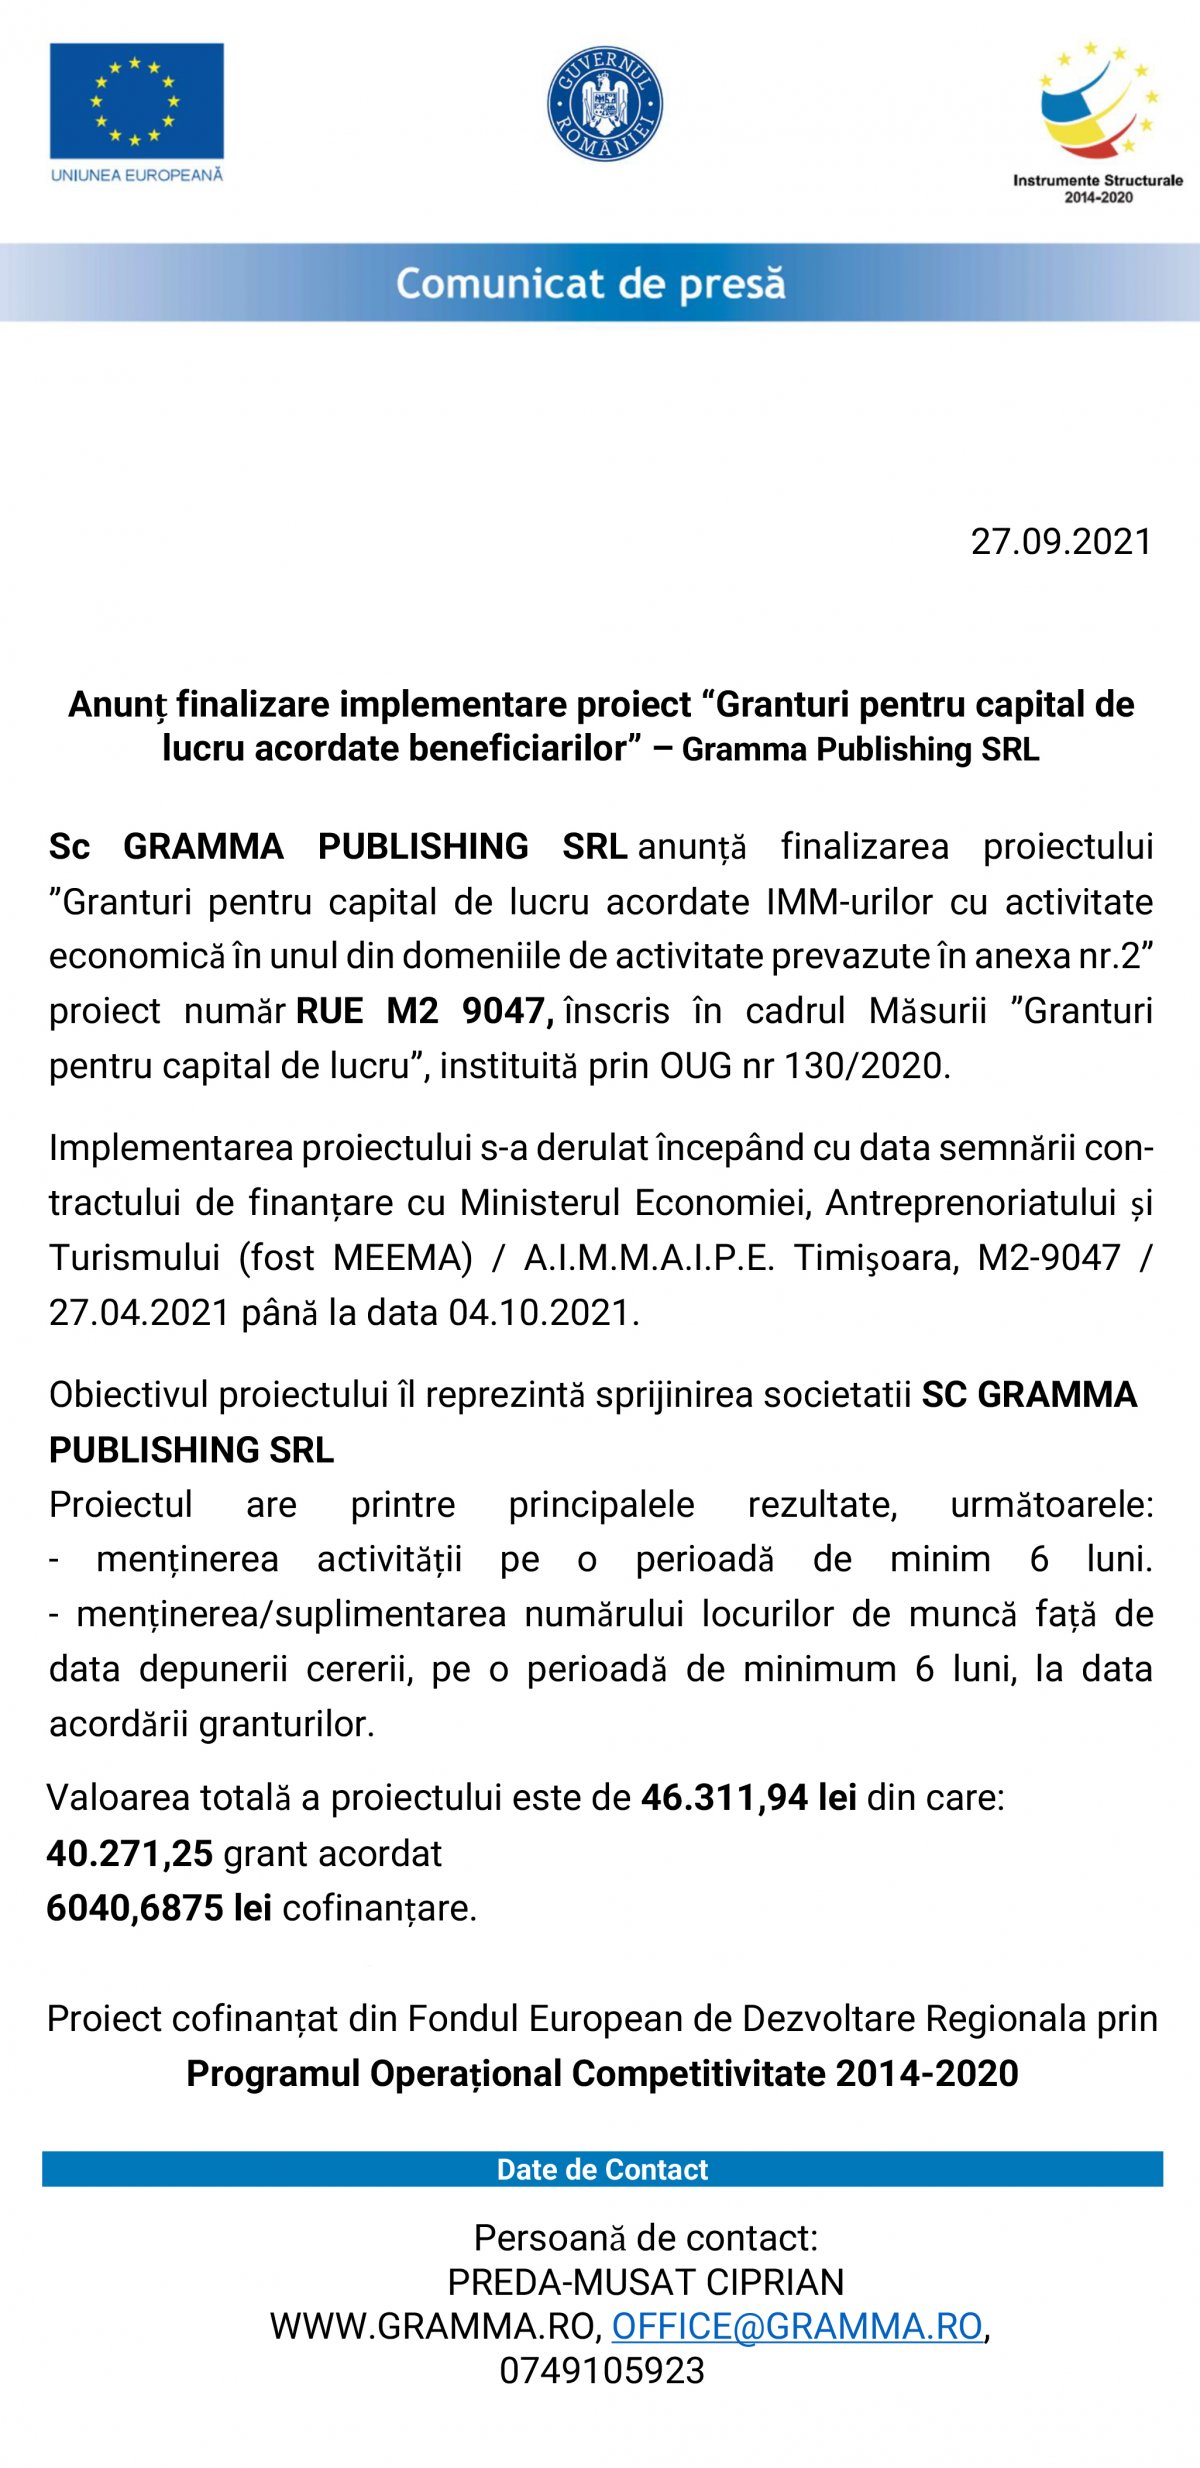 Anunț finalizare implementare proiect “Granturi pentru capital de lucru acordate beneficiarilor” – Gramma Publishing SRL